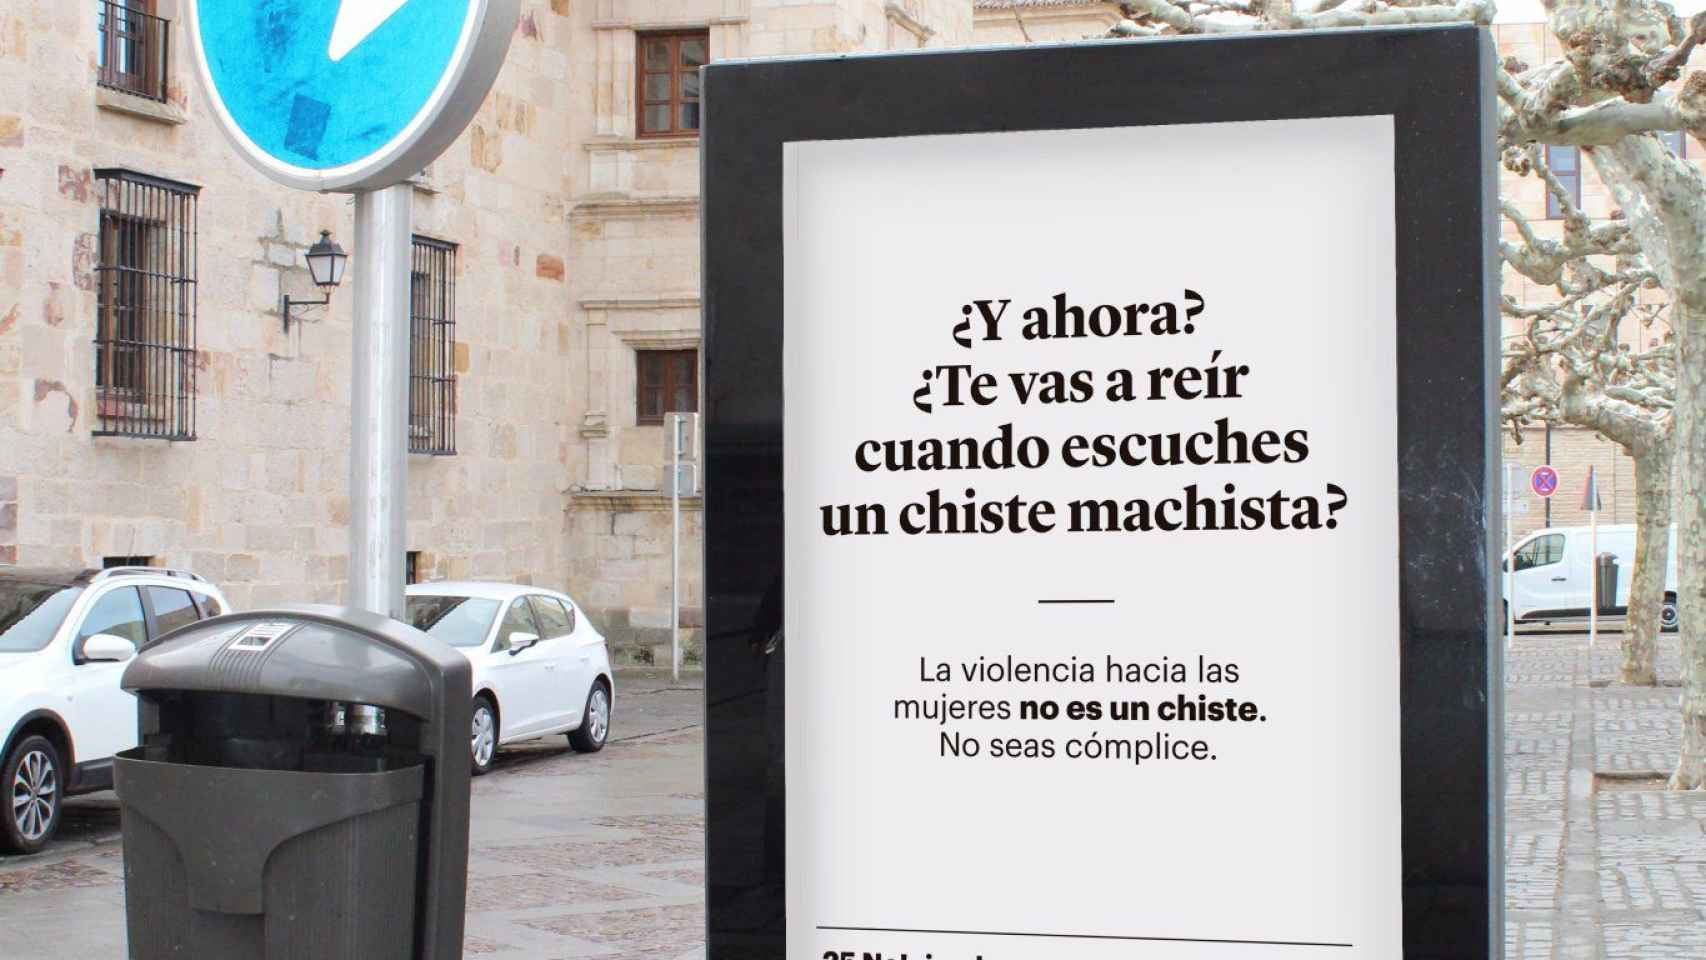 Campaña contra la violencia machista en Zamora / TWITTER